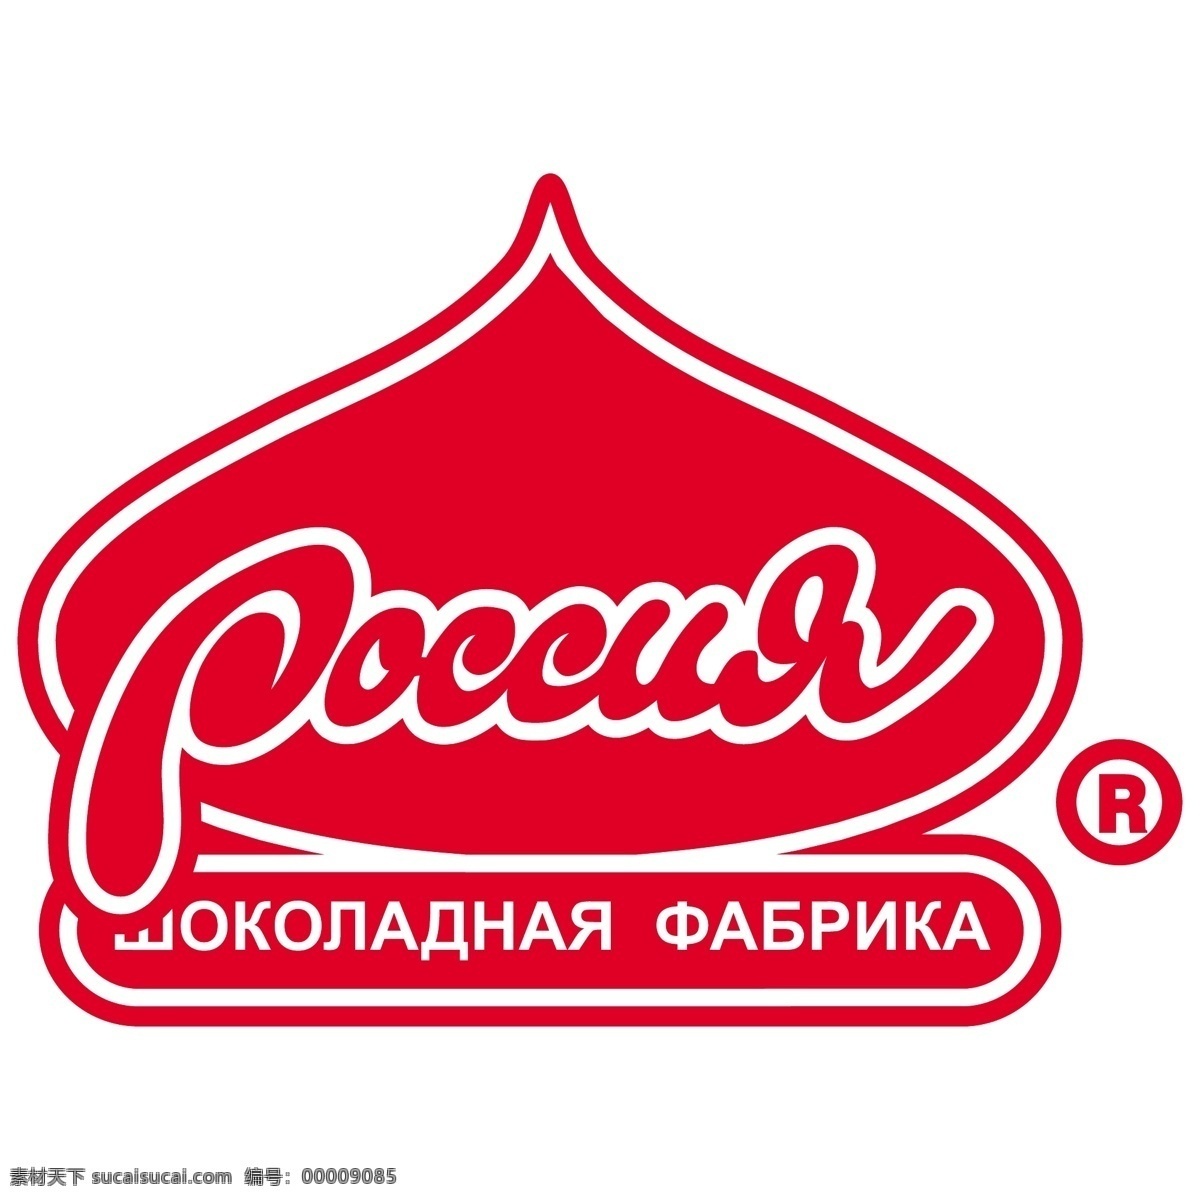 俄罗斯 巧克力 工厂 免费 标志 标识 psd源文件 logo设计